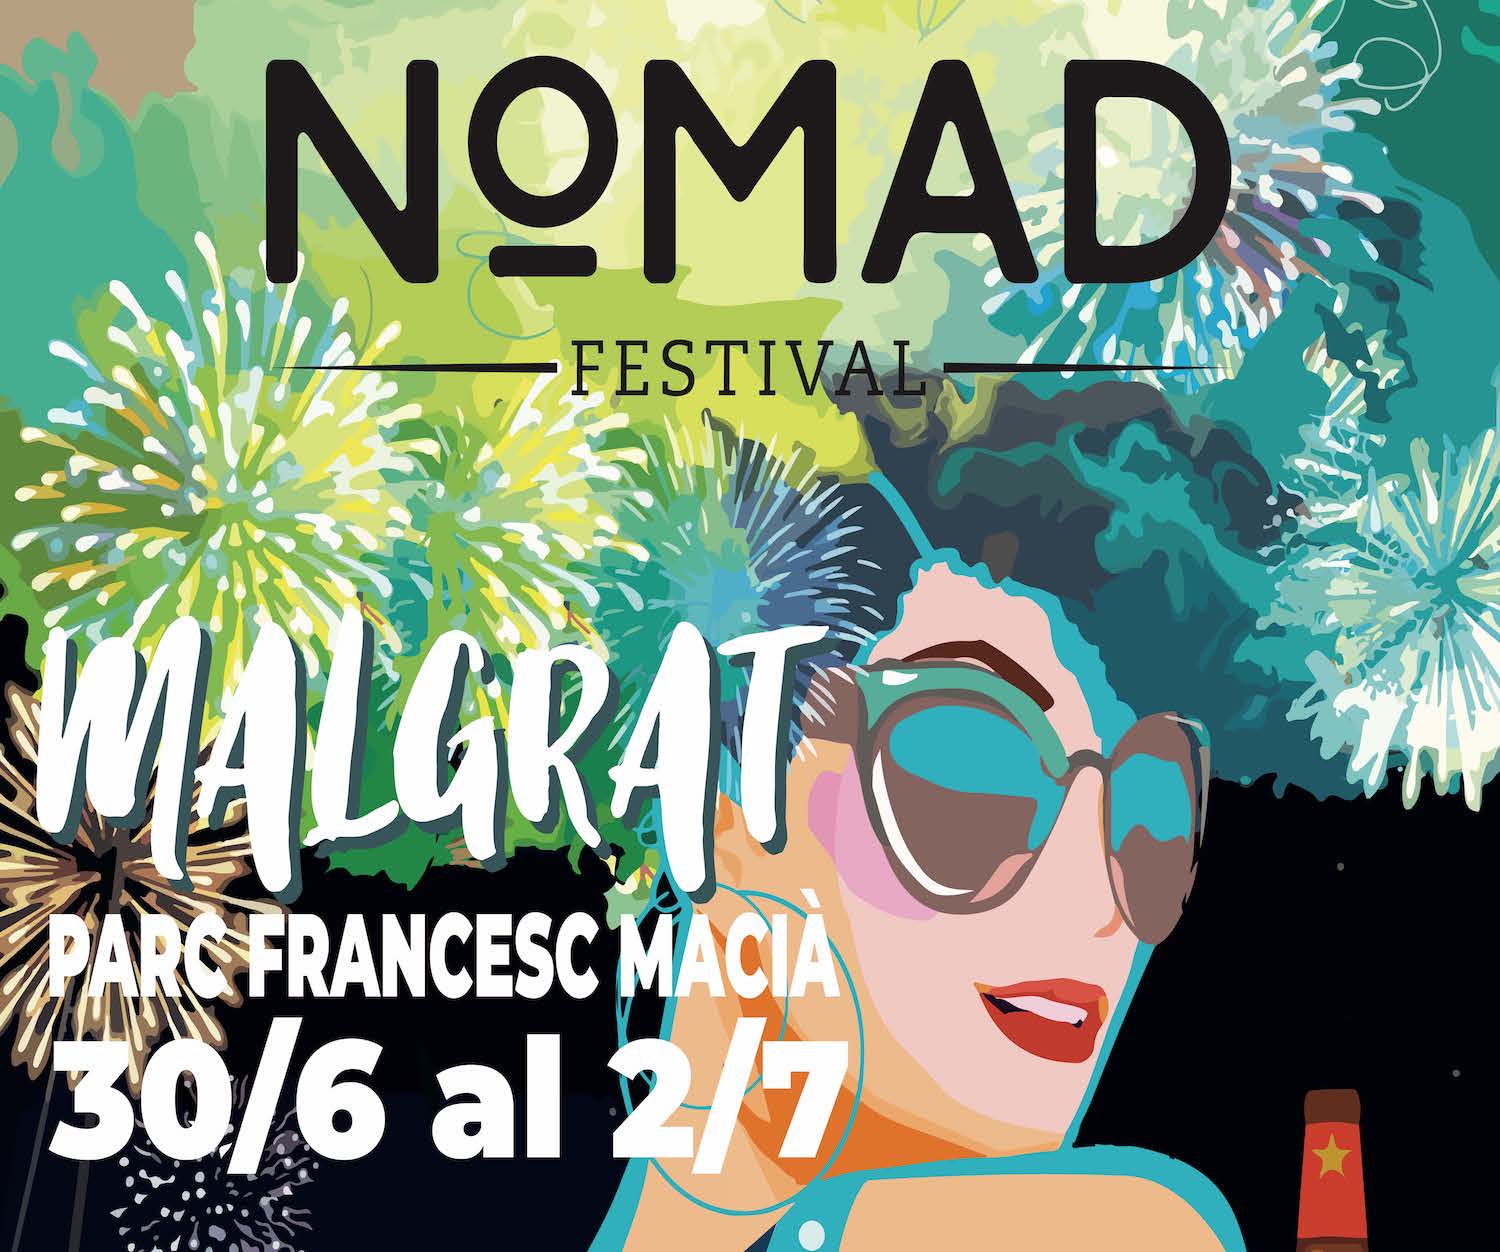 El Nomad Festival torna al Parc Francesc Macià del 30 de juny al 2 de juliol